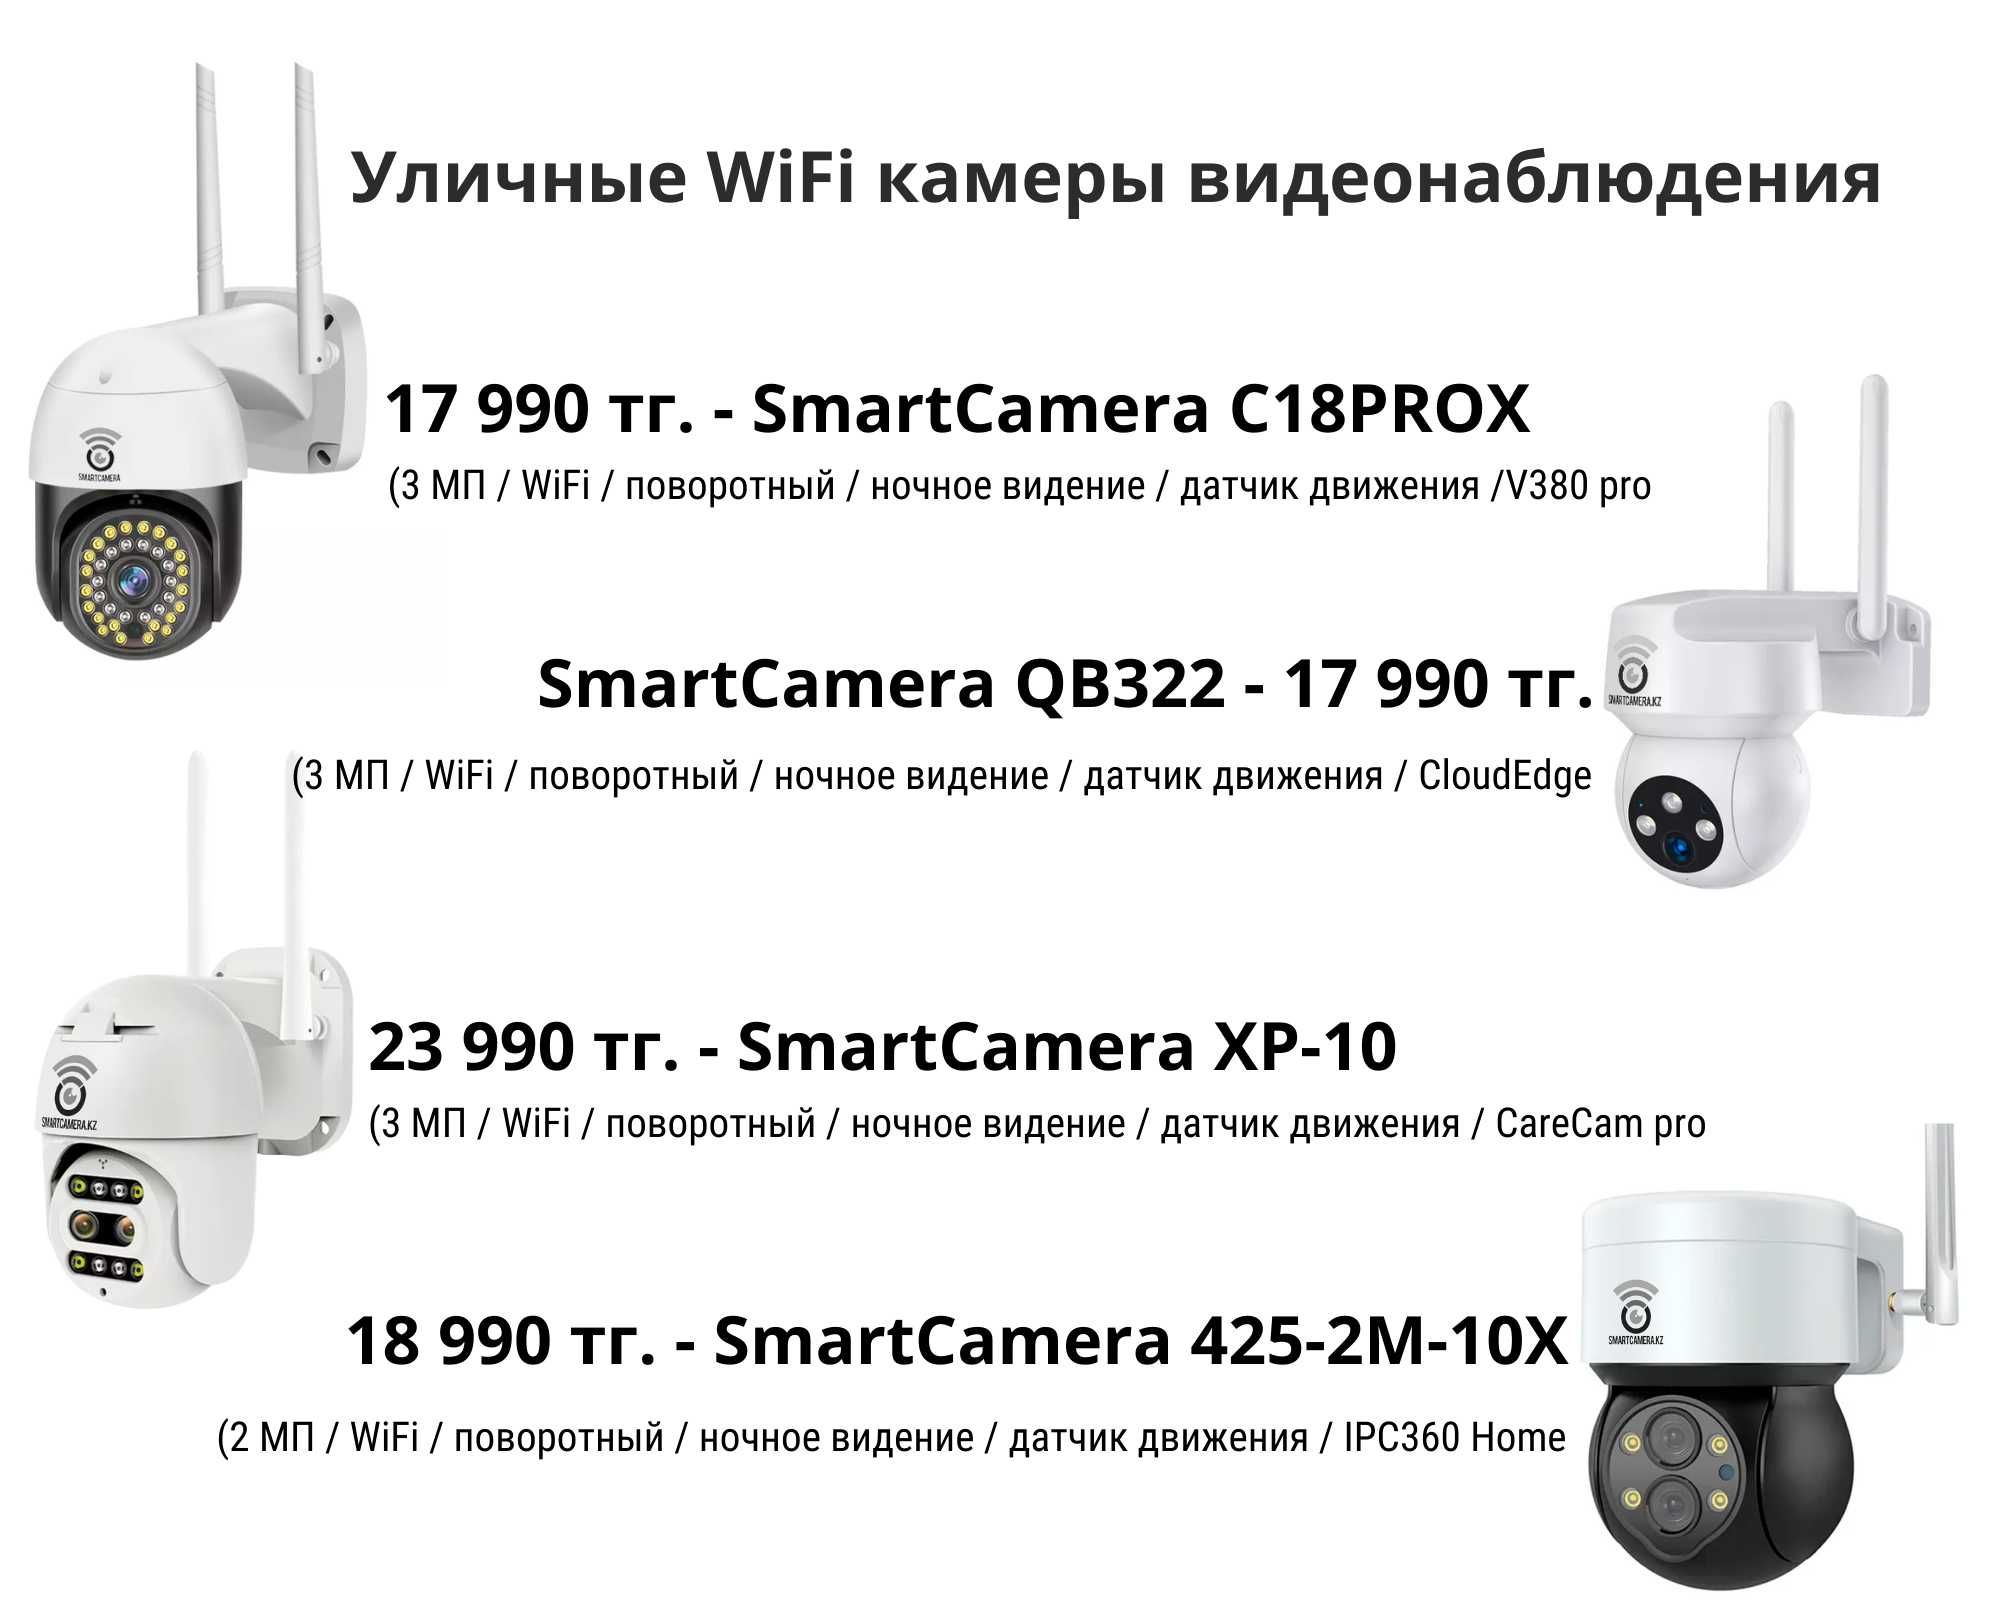 WiFi и 4G камеры видеонаблюдения для безопасности дома и бизнеса